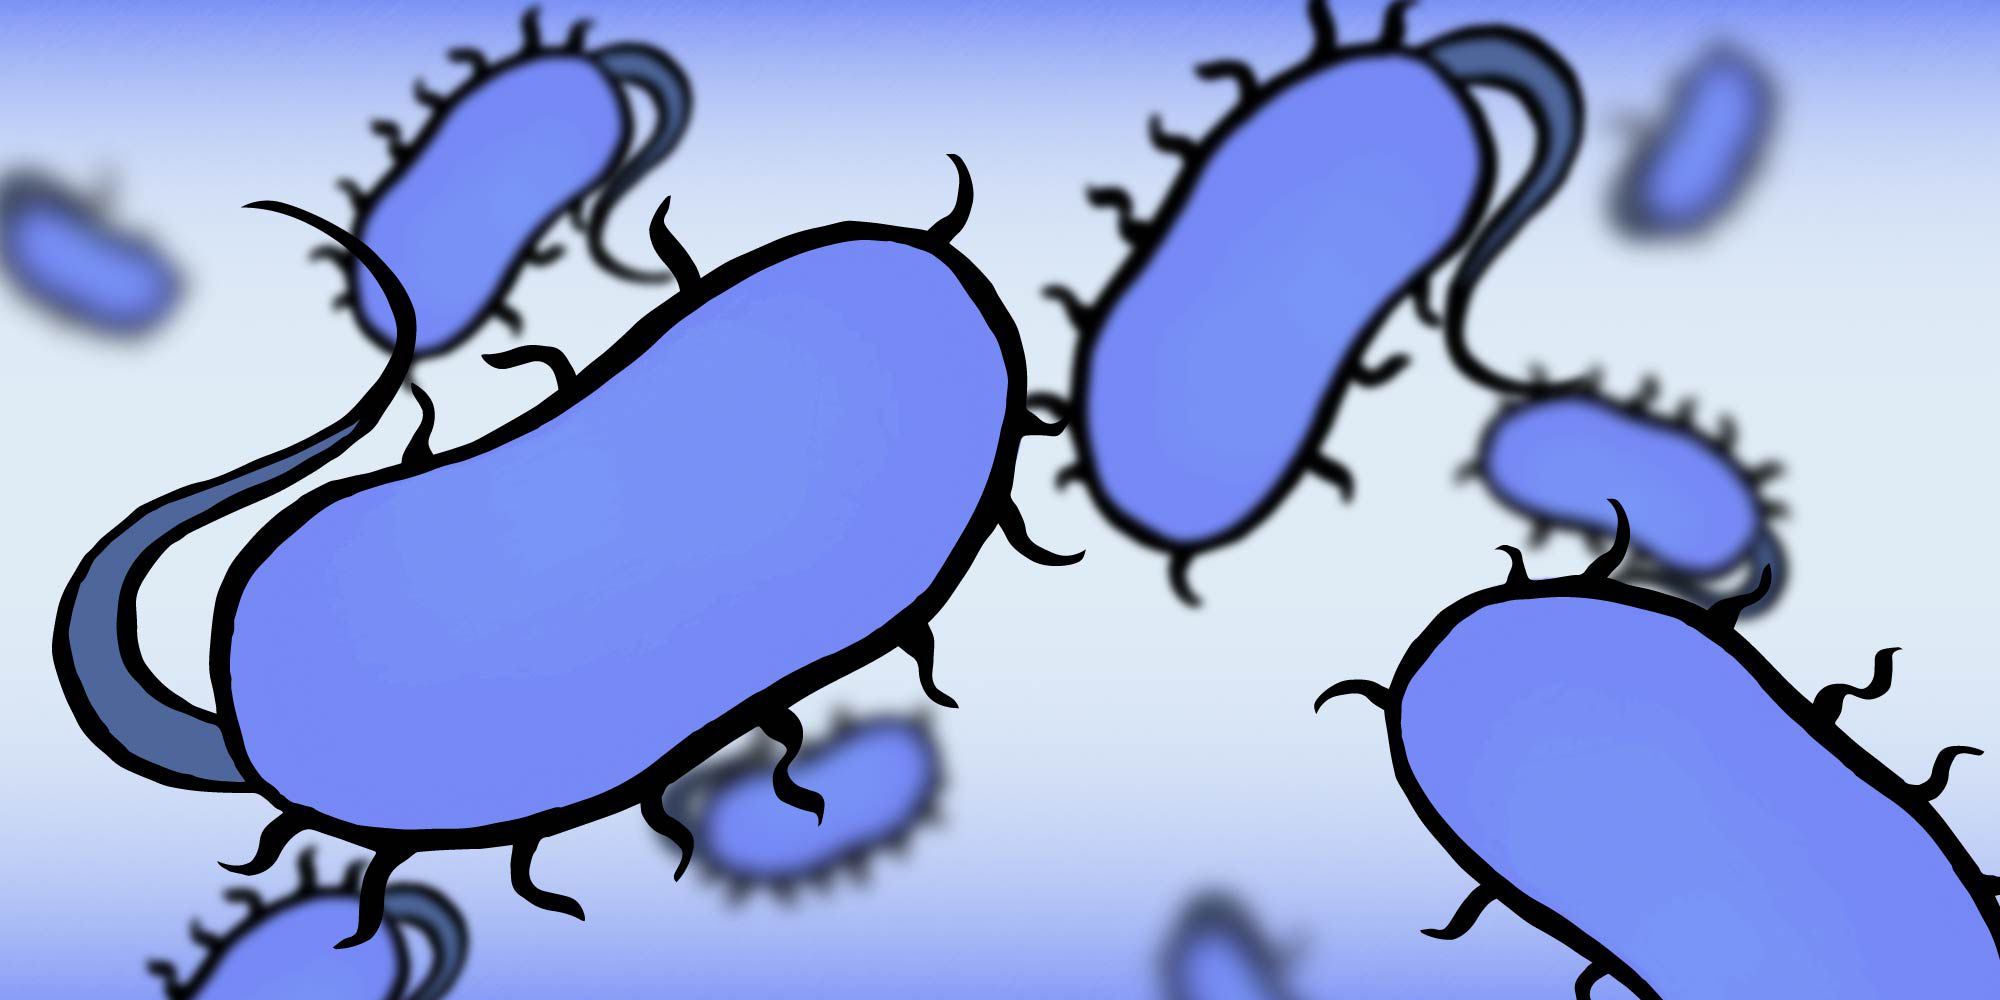 Artistic rendering of E. coli